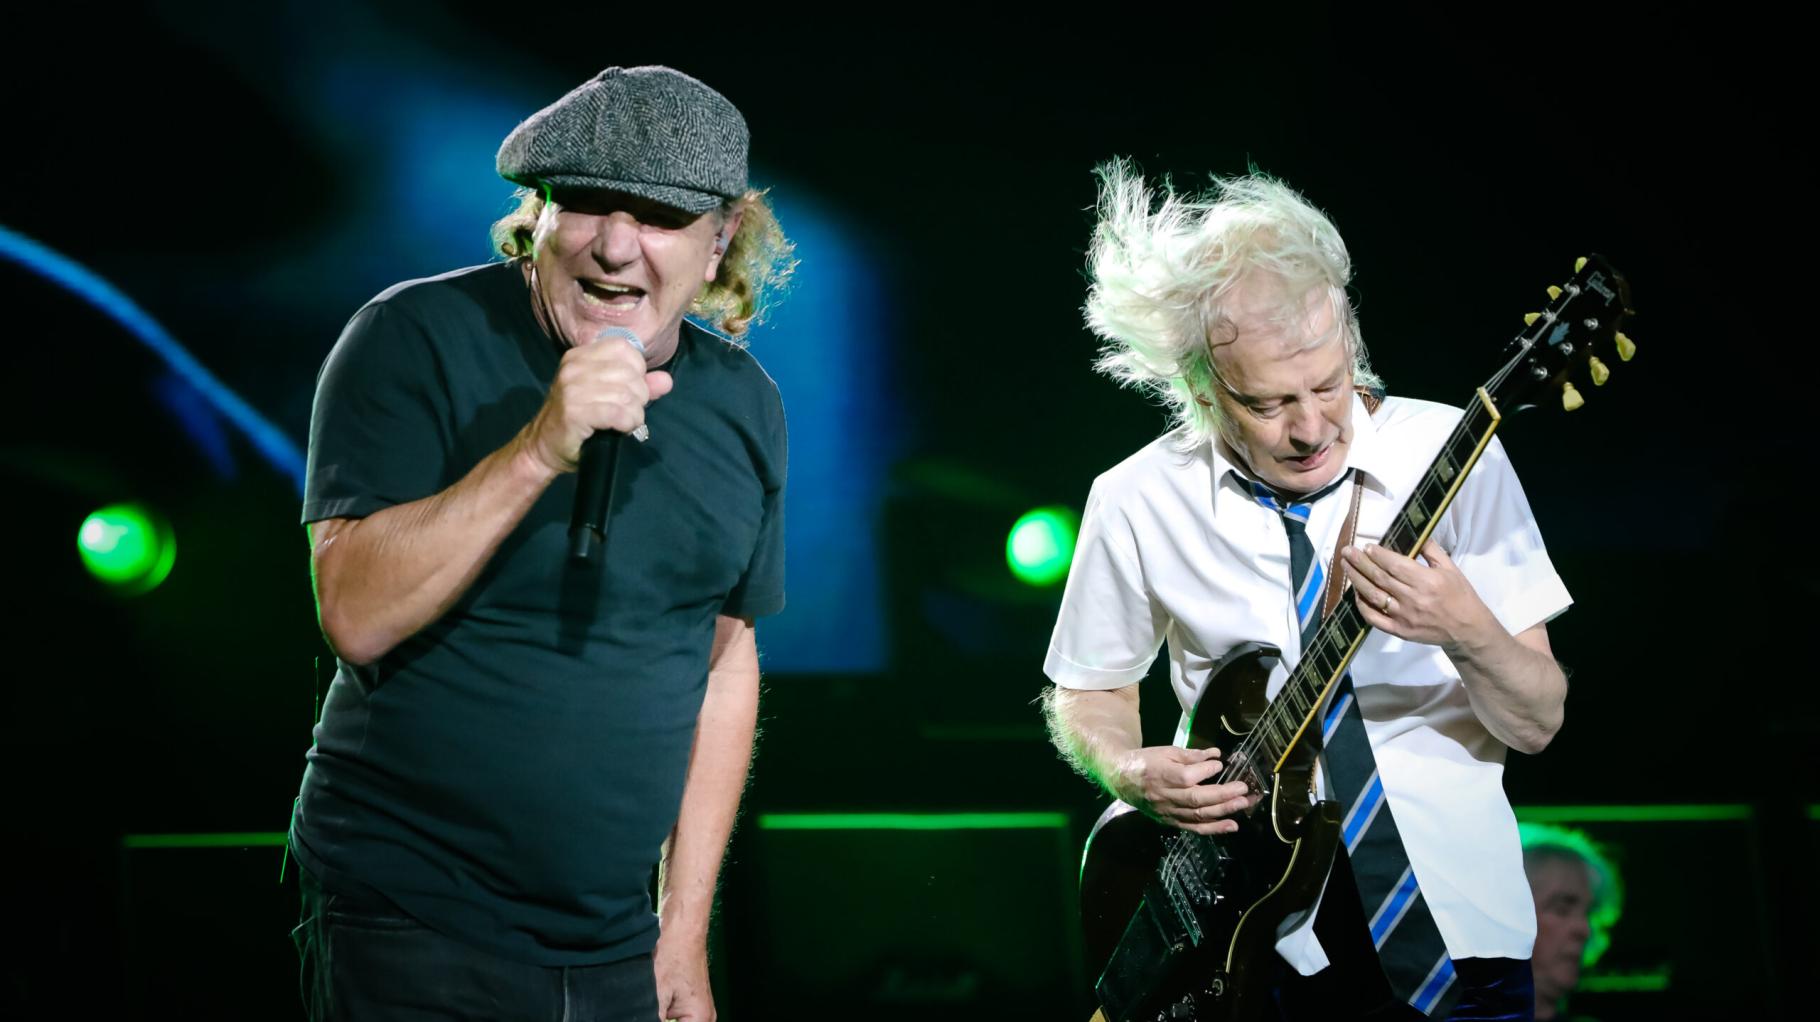 Tournee von AC/DC: Das sagen Experten aus MV über das Comeback der Kultband